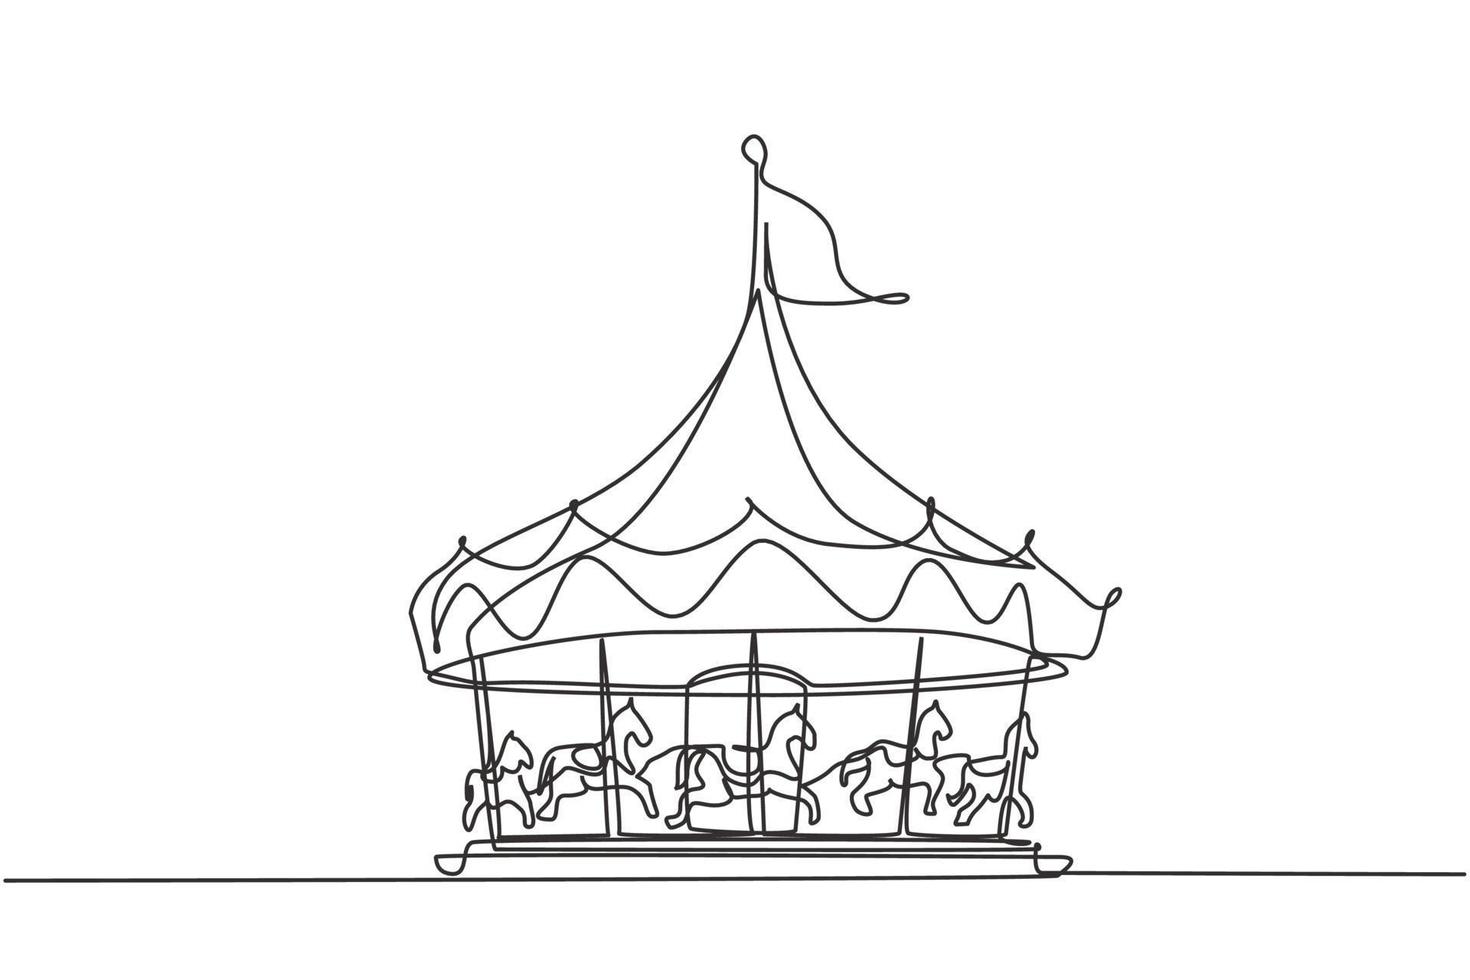 durchgehendes Einstrich-Pferdekarussell in einem Vergnügungspark, das sich unter einem großen Zelt mit einer Flagge dreht. Erholung, die Kinder lieben. Einzeilige Zeichnung Design Vektorgrafik Illustration vektor